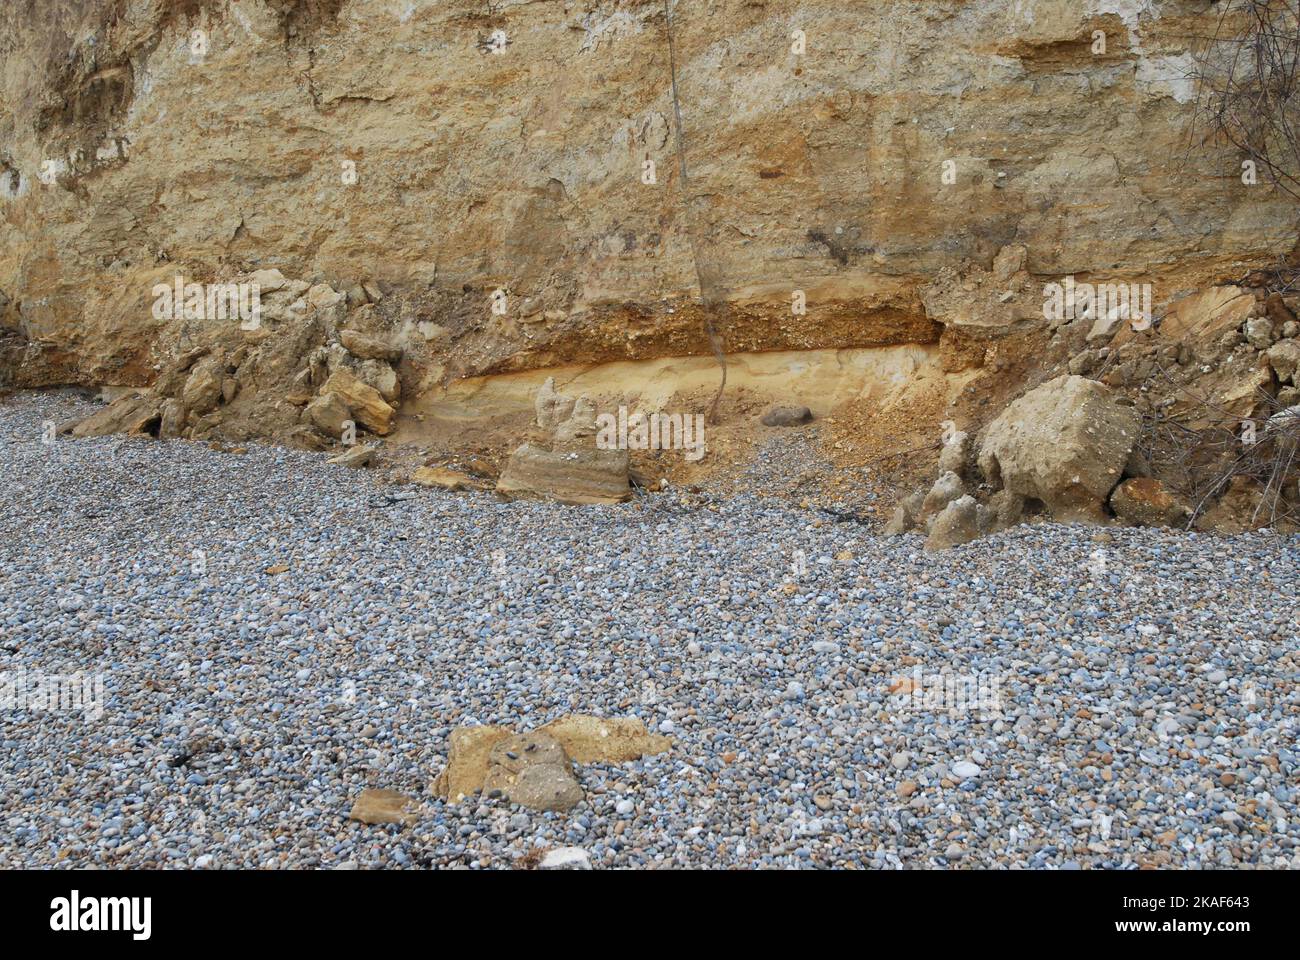 Incuneandosi in strato di superficie alla base della scogliera, composto da Norwich Crag, una miscela di sabbia, ghiaia e depositi fossili marini. Thorpeness 22/10/2022. Foto Stock